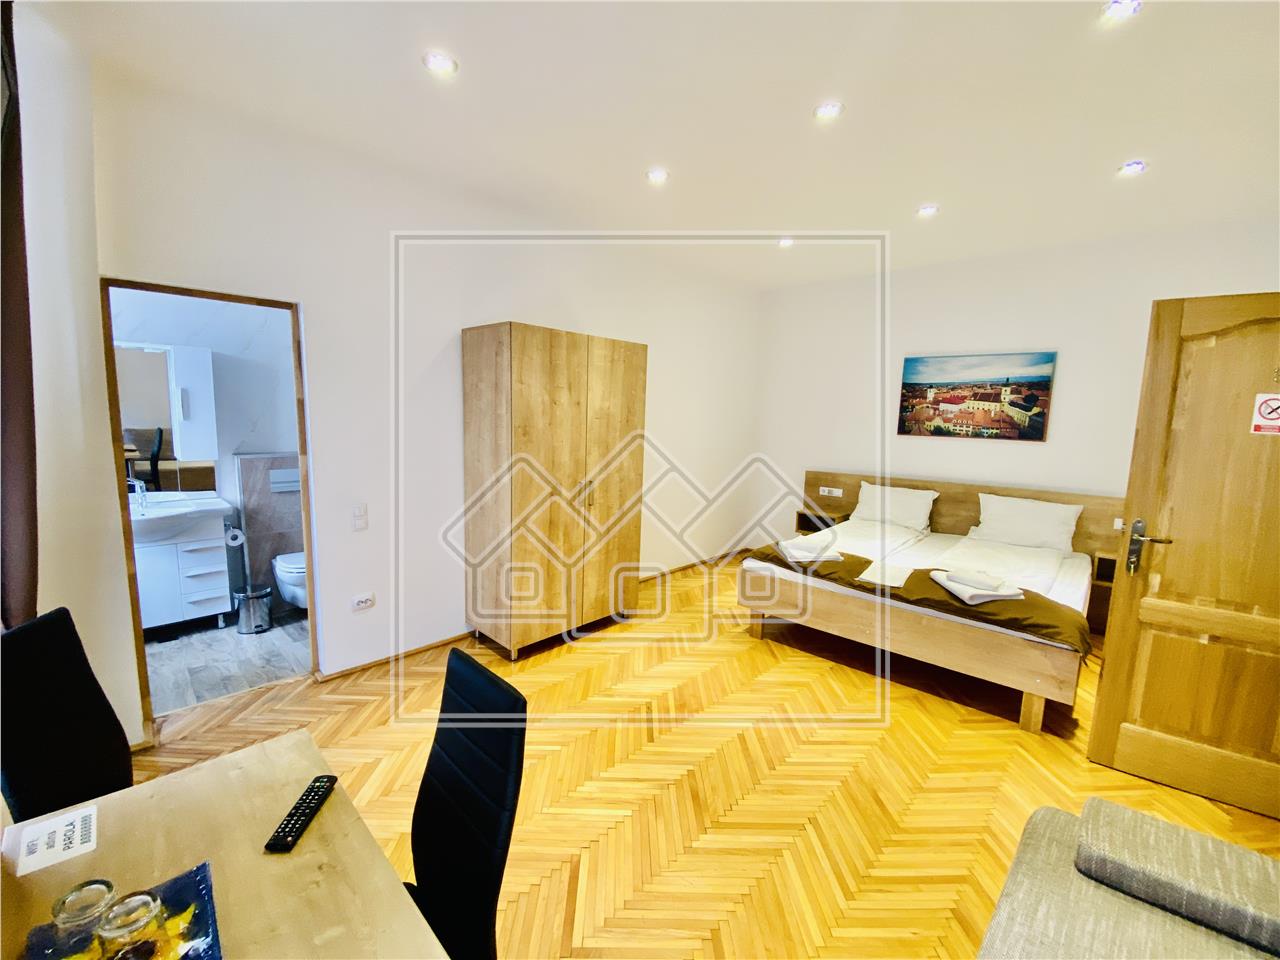 Wohnung zum Verkauf in Sibiu - 187 qm - 4 Zimmer, 4 Badezimmer und Kel